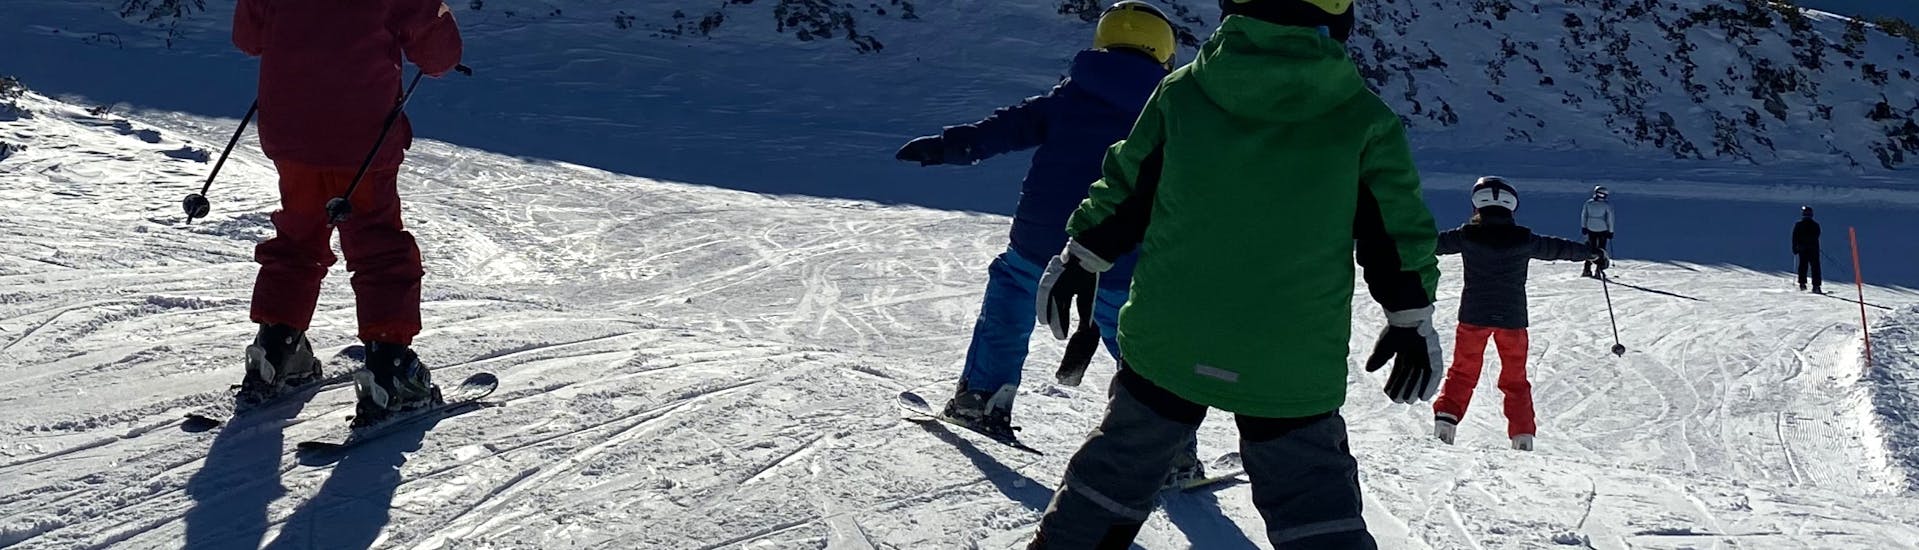 Cours particulier de ski Enfants pour Tous niveaux.